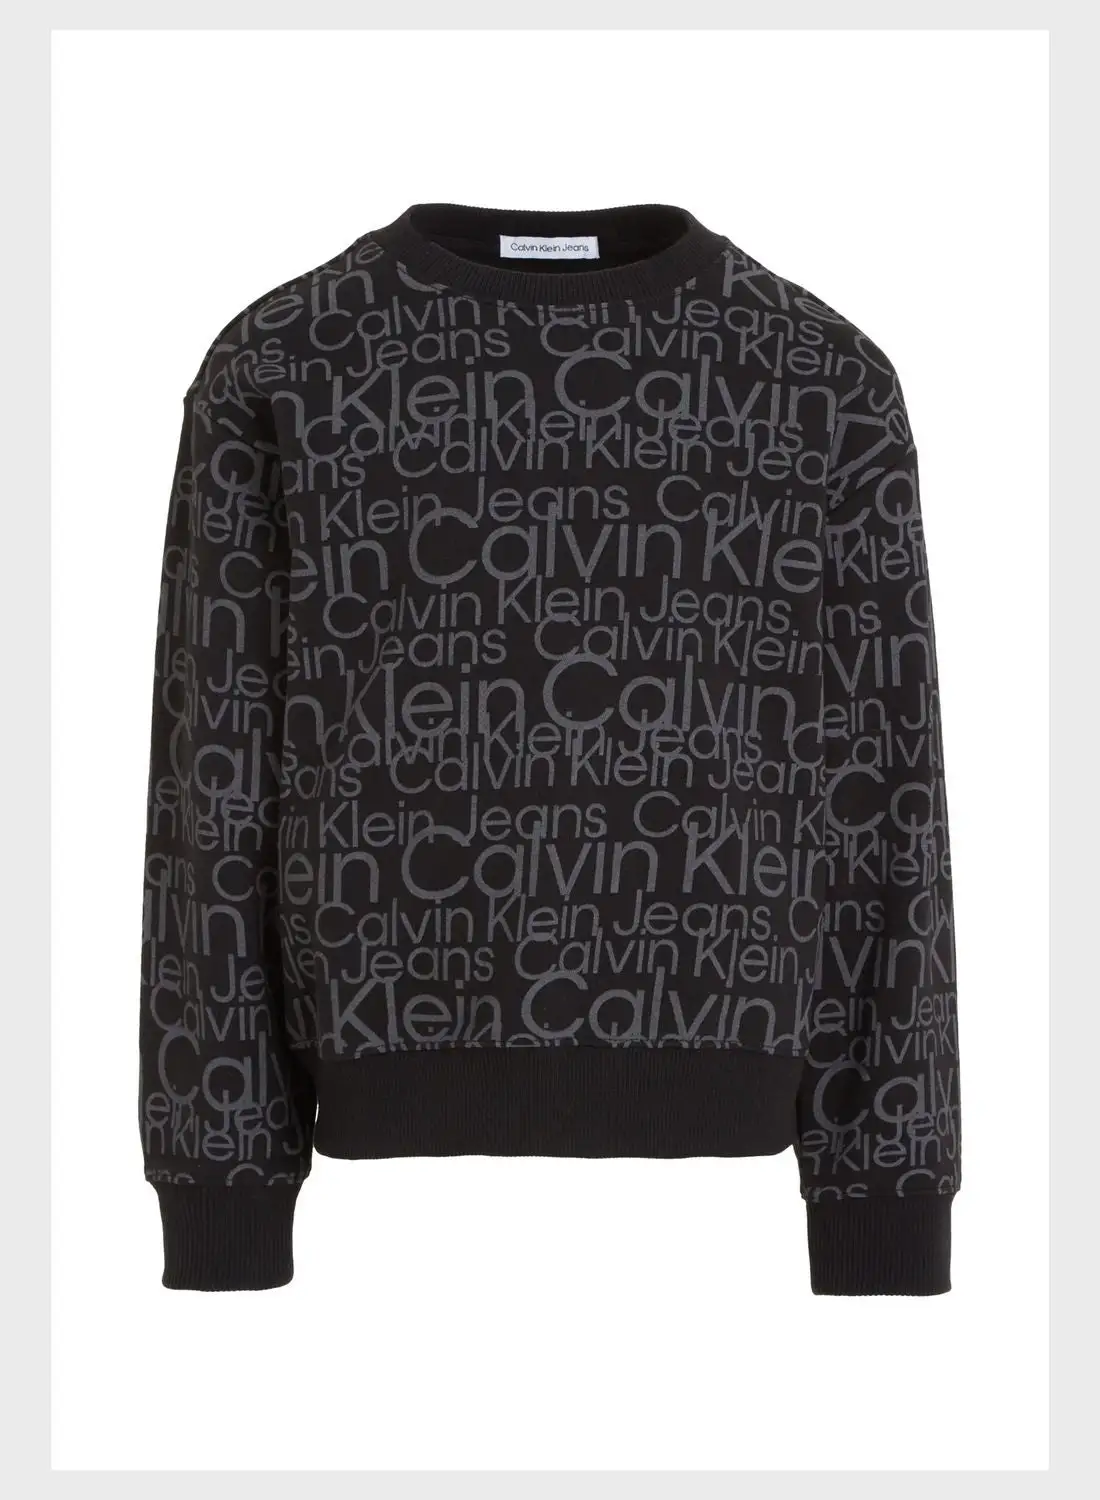 Calvin Klein Jeans Kids Graphic Sweatshirt